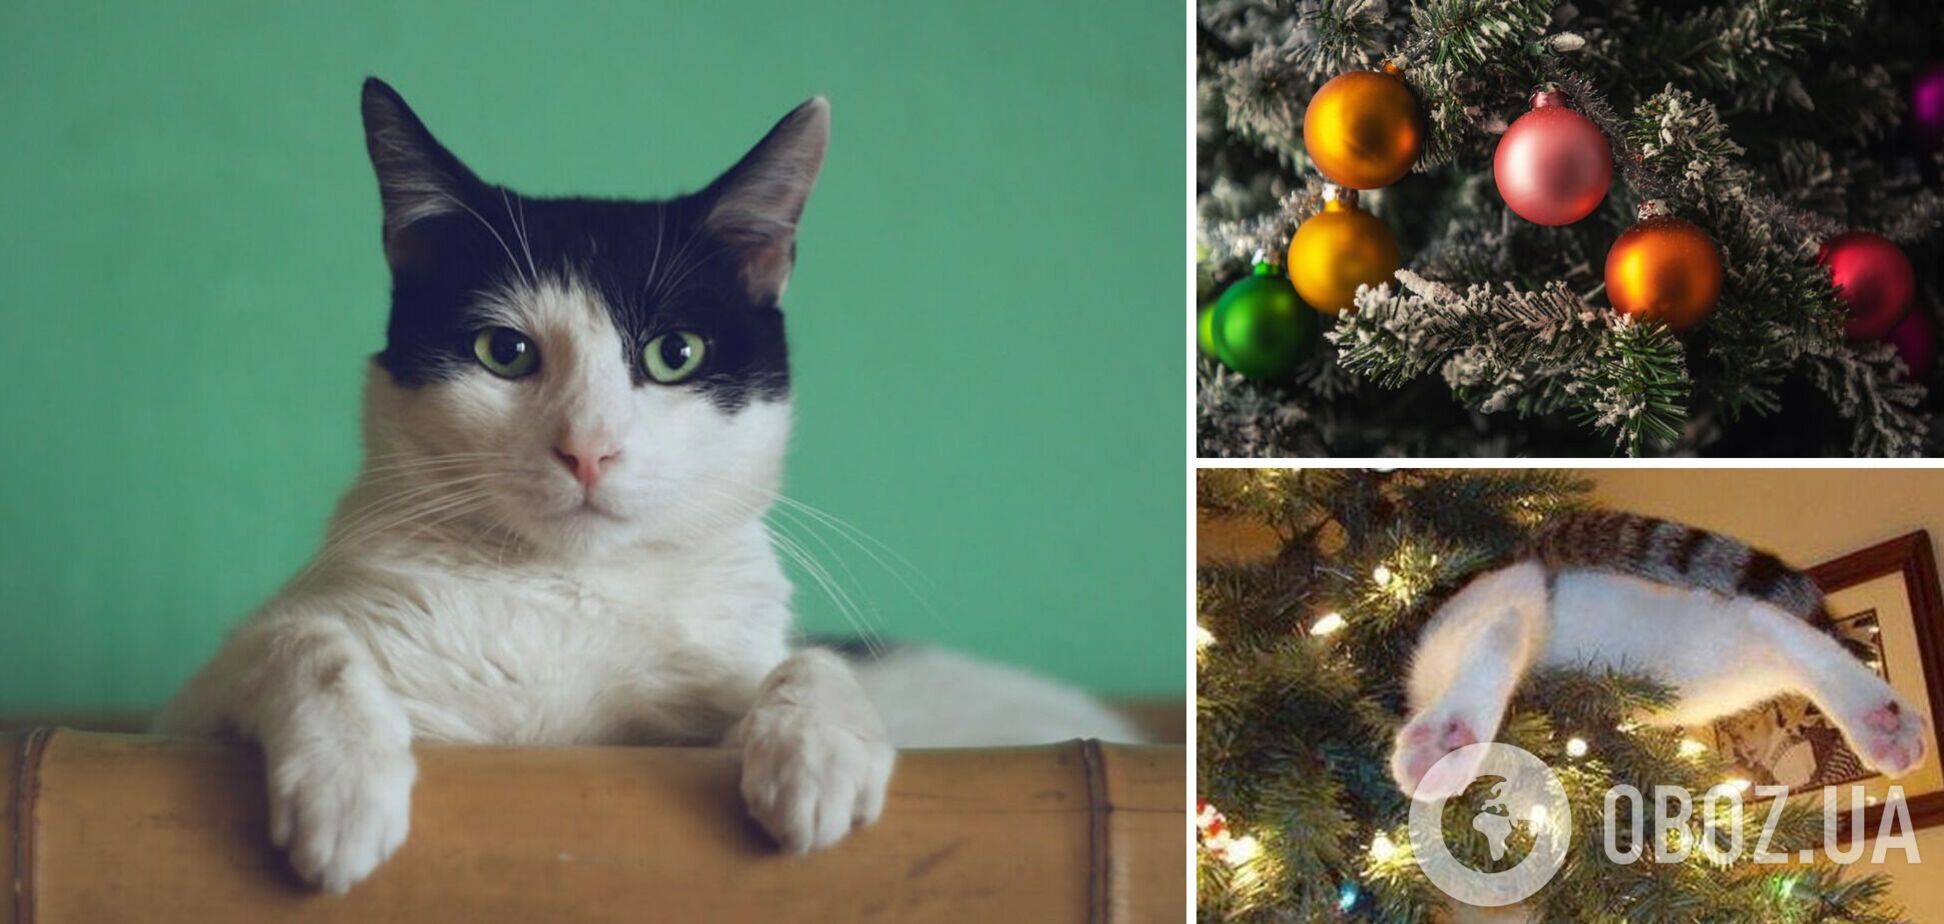 Как спасти новогоднюю елку от кота: ученые раскритиковали лайфхак из TikTok